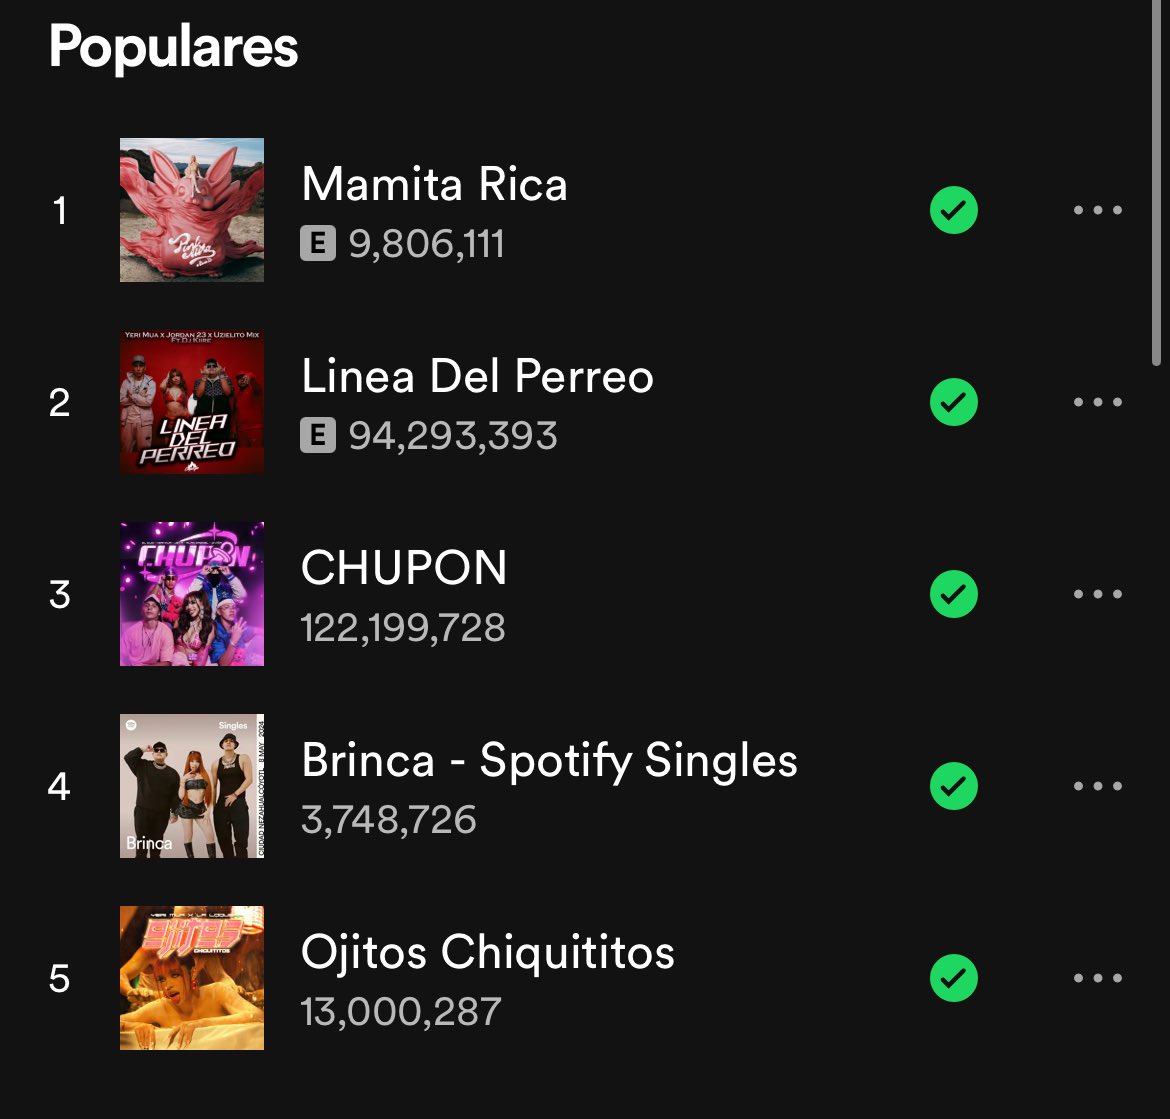 “Brinca” desplaza a “Ojitos Chiquititos” y se convierte en la canción #4 más popular de Spotify de Yeri Mua